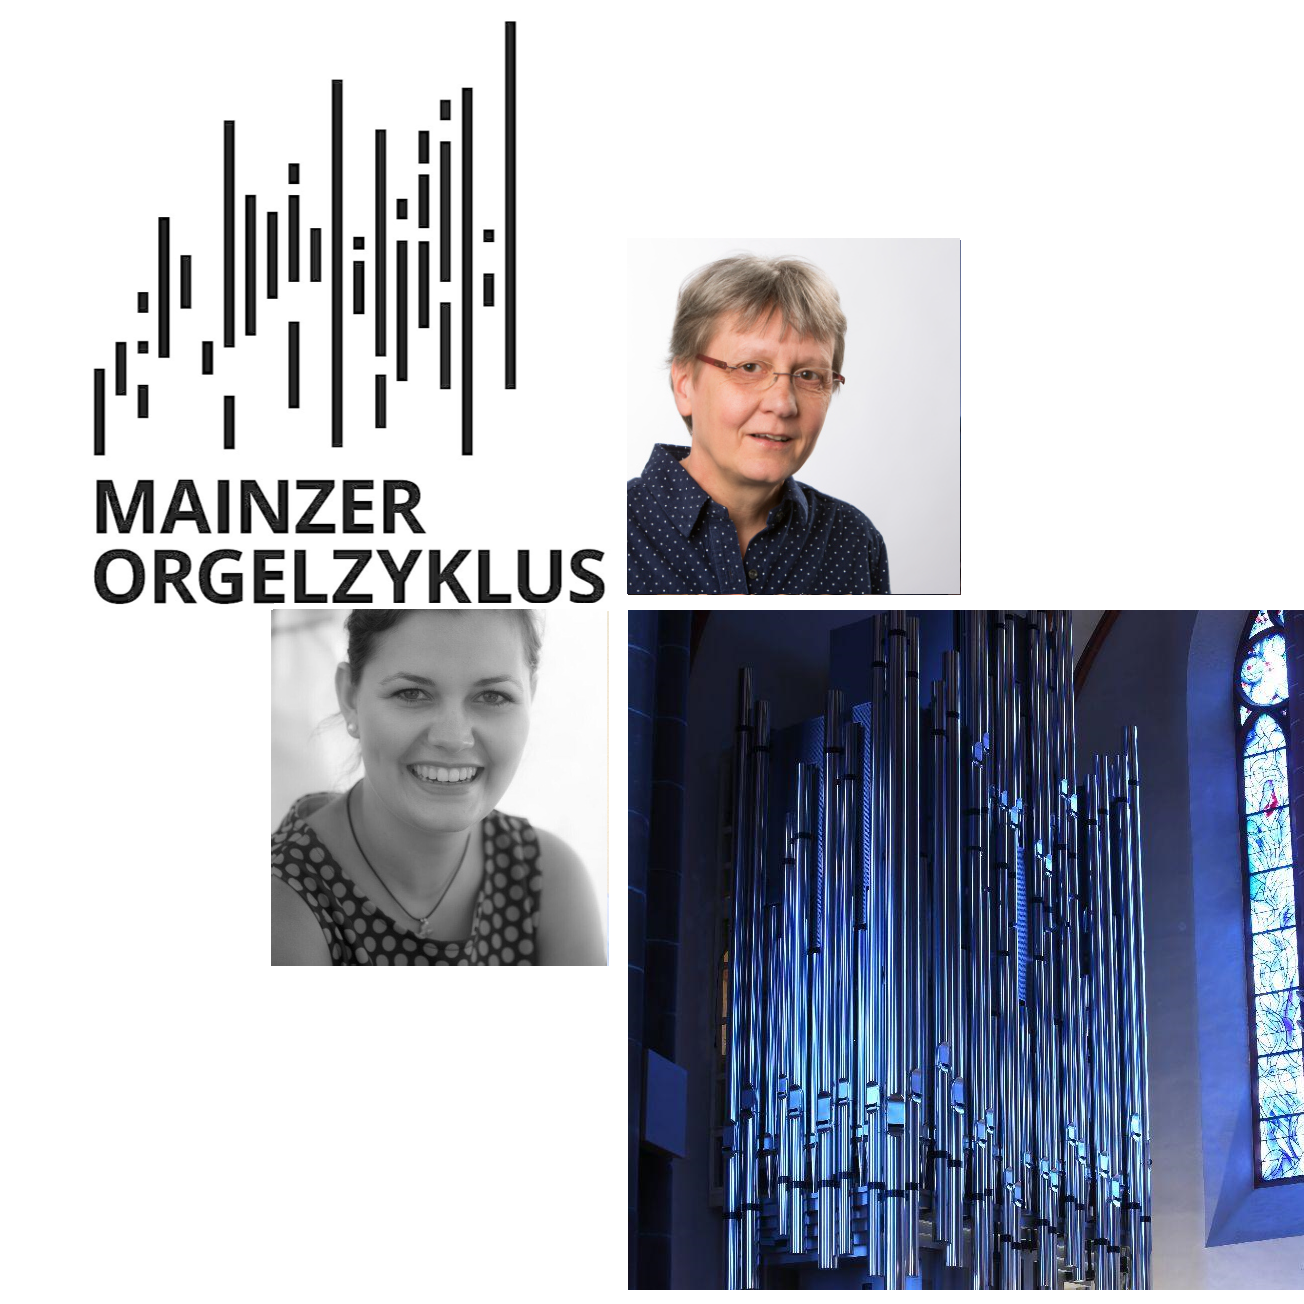 Mainzer Orgelzyklus (c) St. Stephan